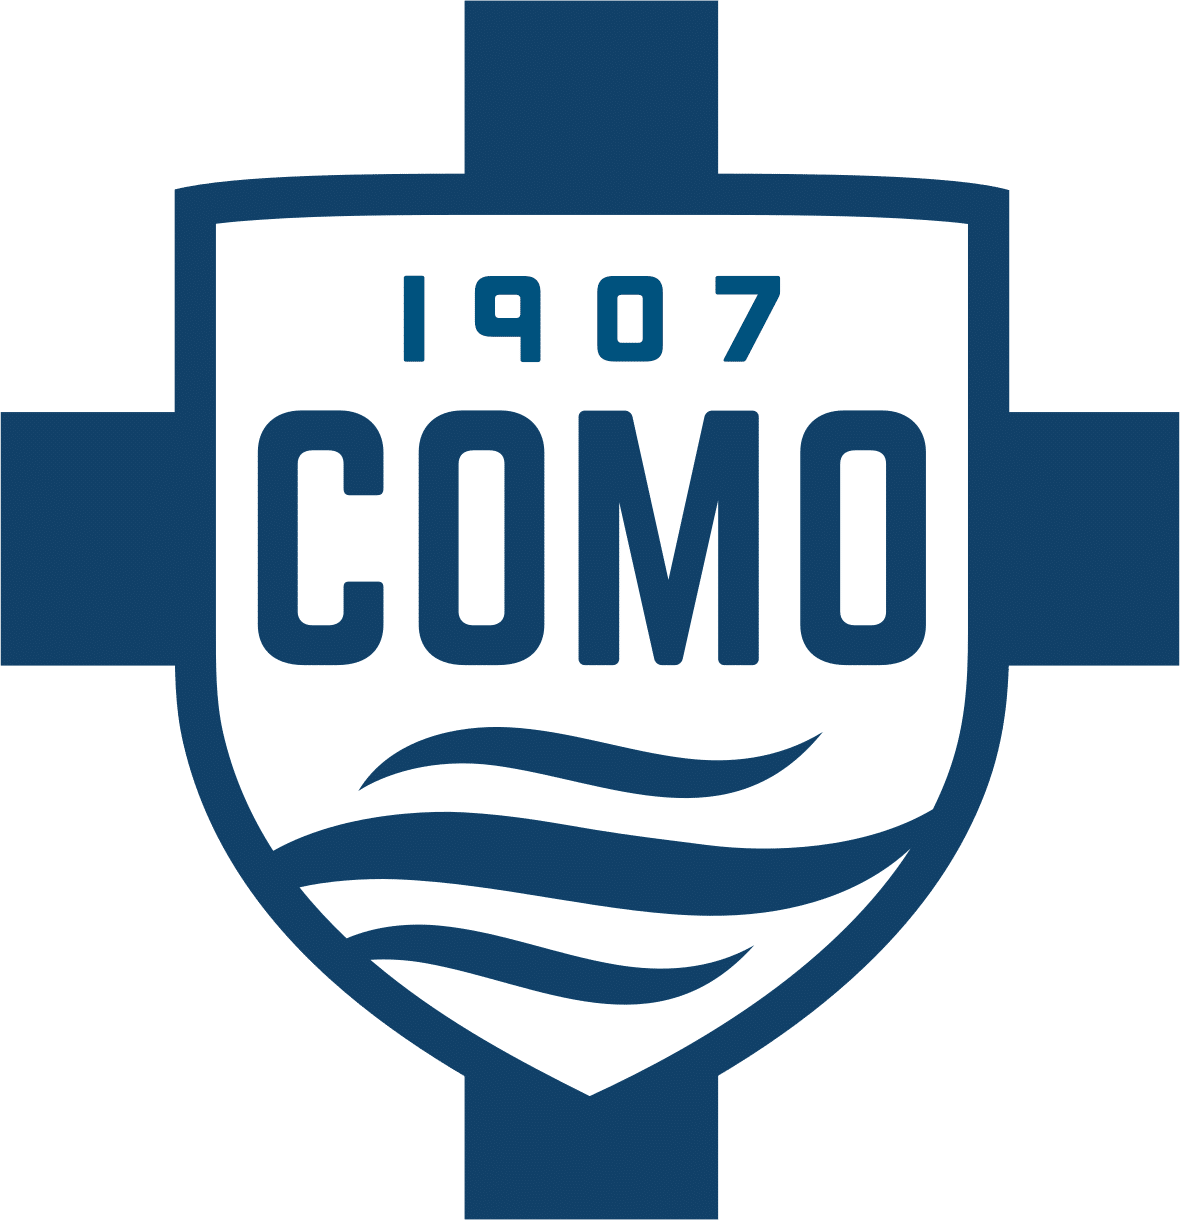 Image of the Como 1907 football club logo